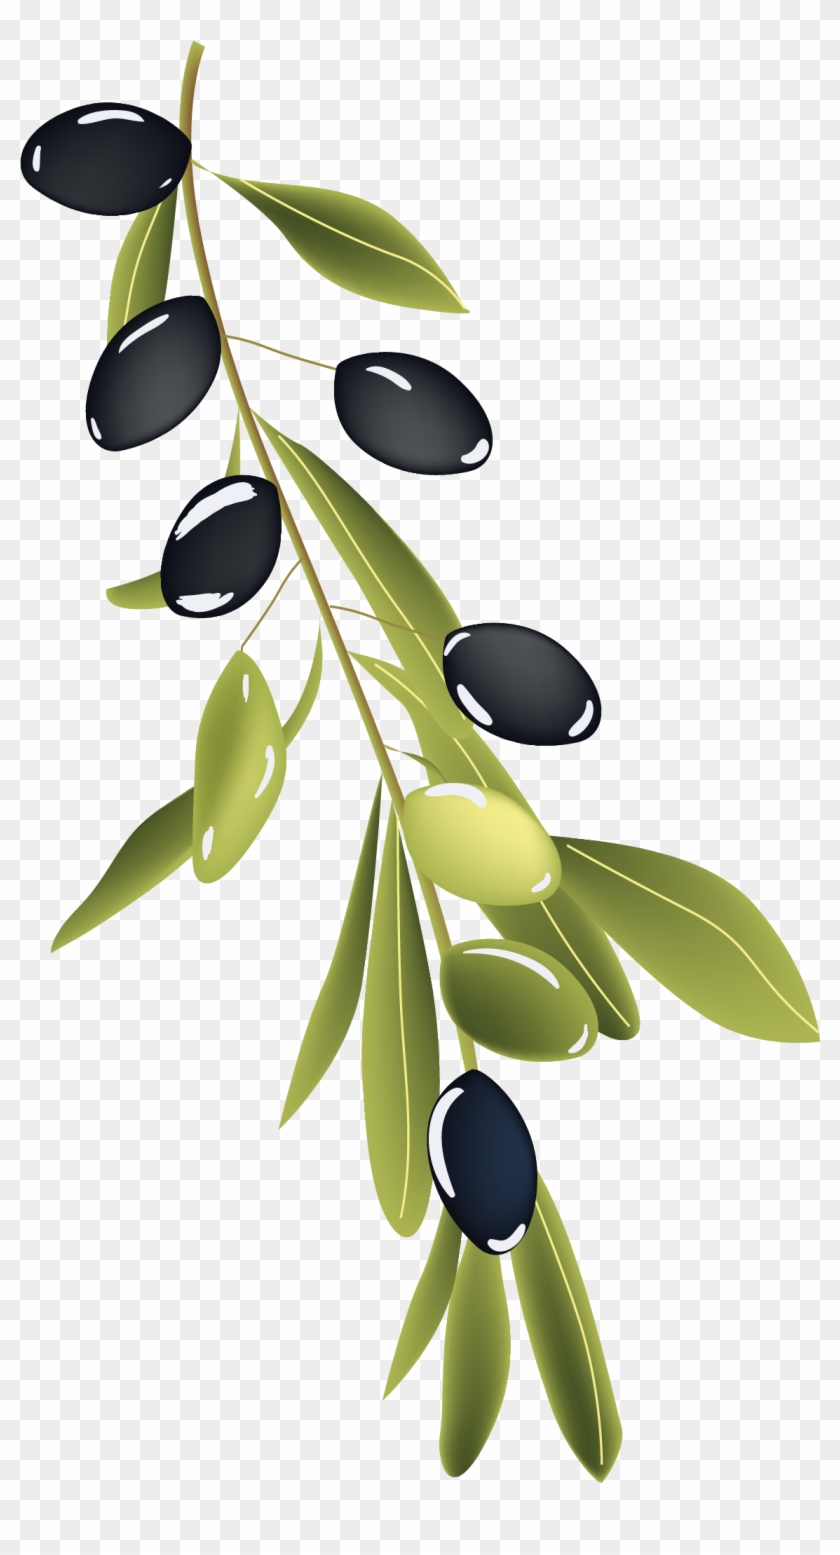 Olive Branch Drawing - Olive Branch Drawing #384691